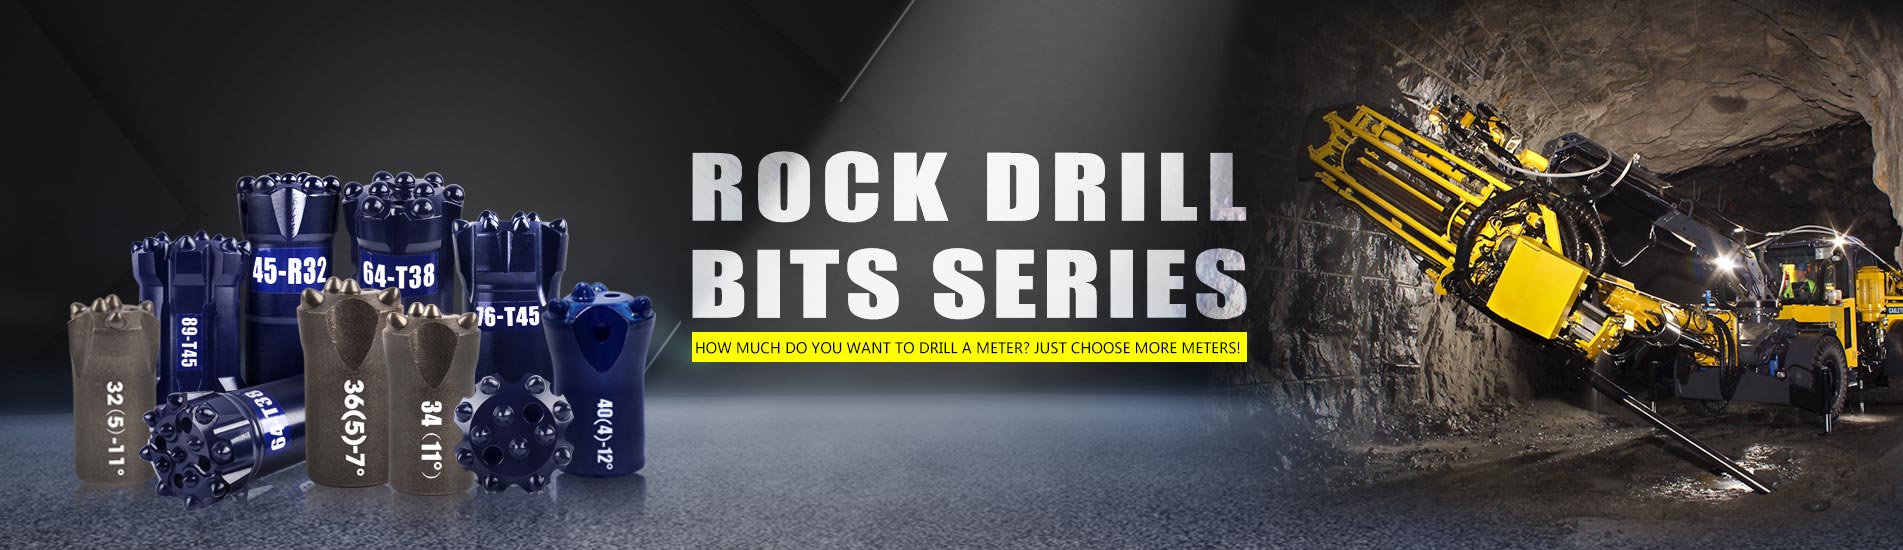 Rock Drill Bits